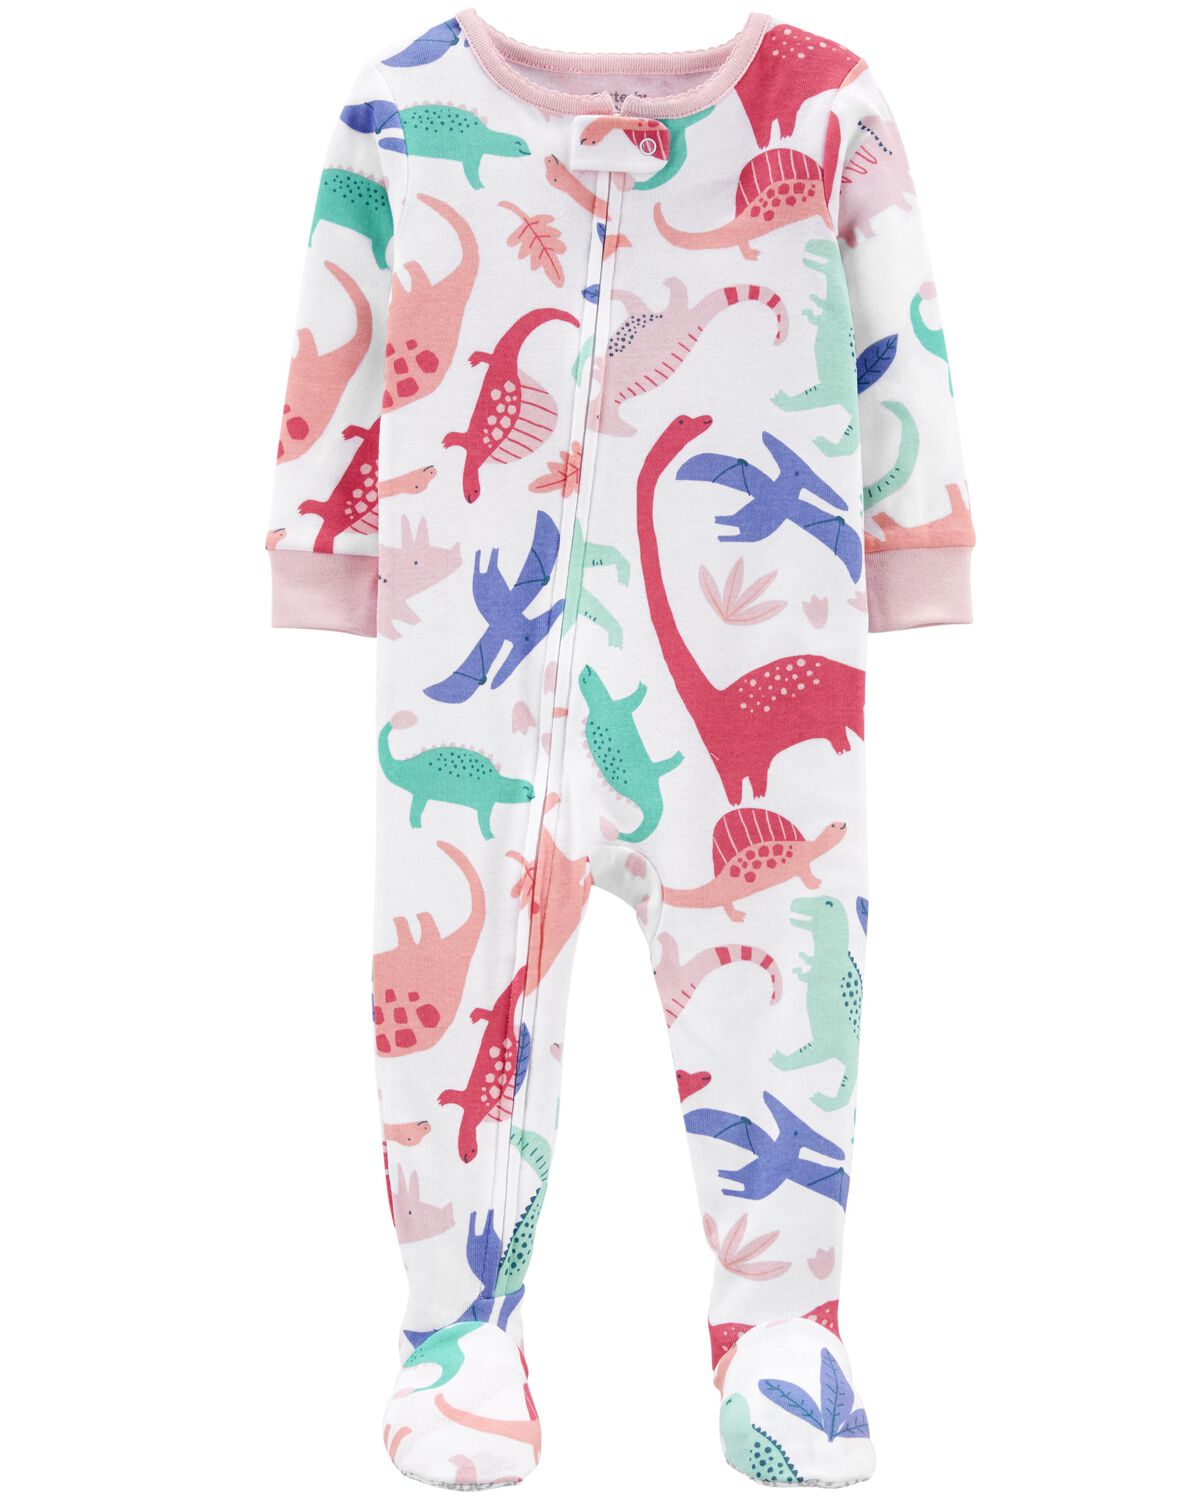 Multi Toddler 1-Piece Dinosaur 100% Snug Fit Cotton Footie Pajamas ...